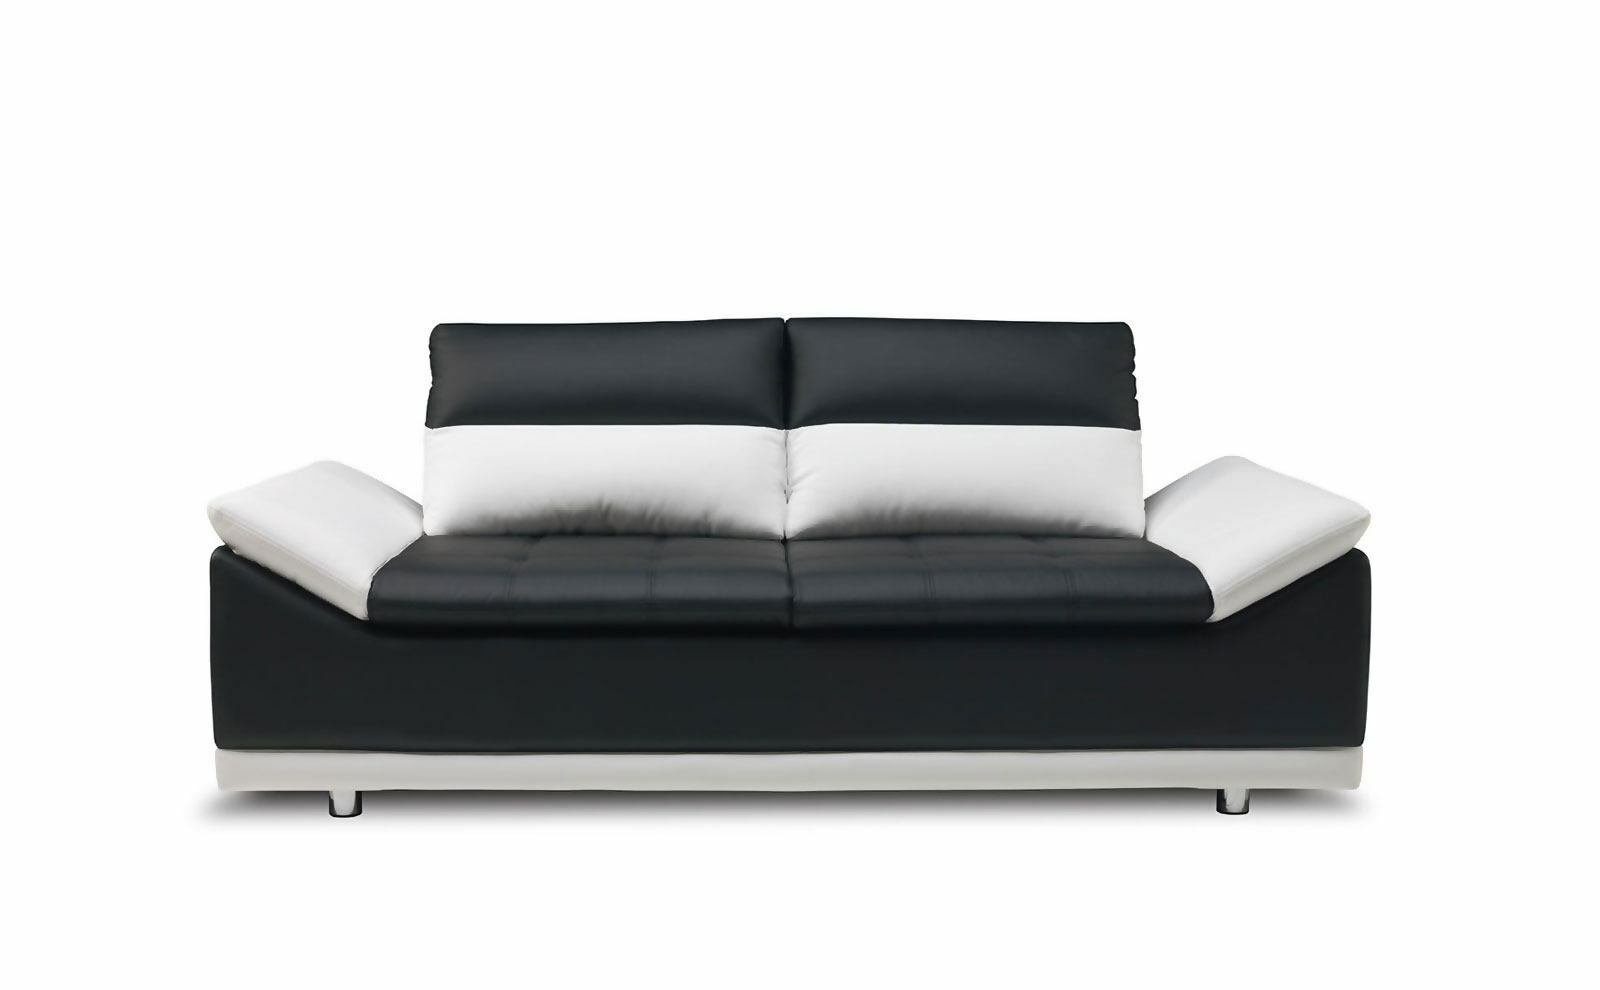 Made in Couchen Europe JVmoebel Luxus Sofa Möbel, Schwarze Moderne 3+2 Sitzer Sofagarnitur